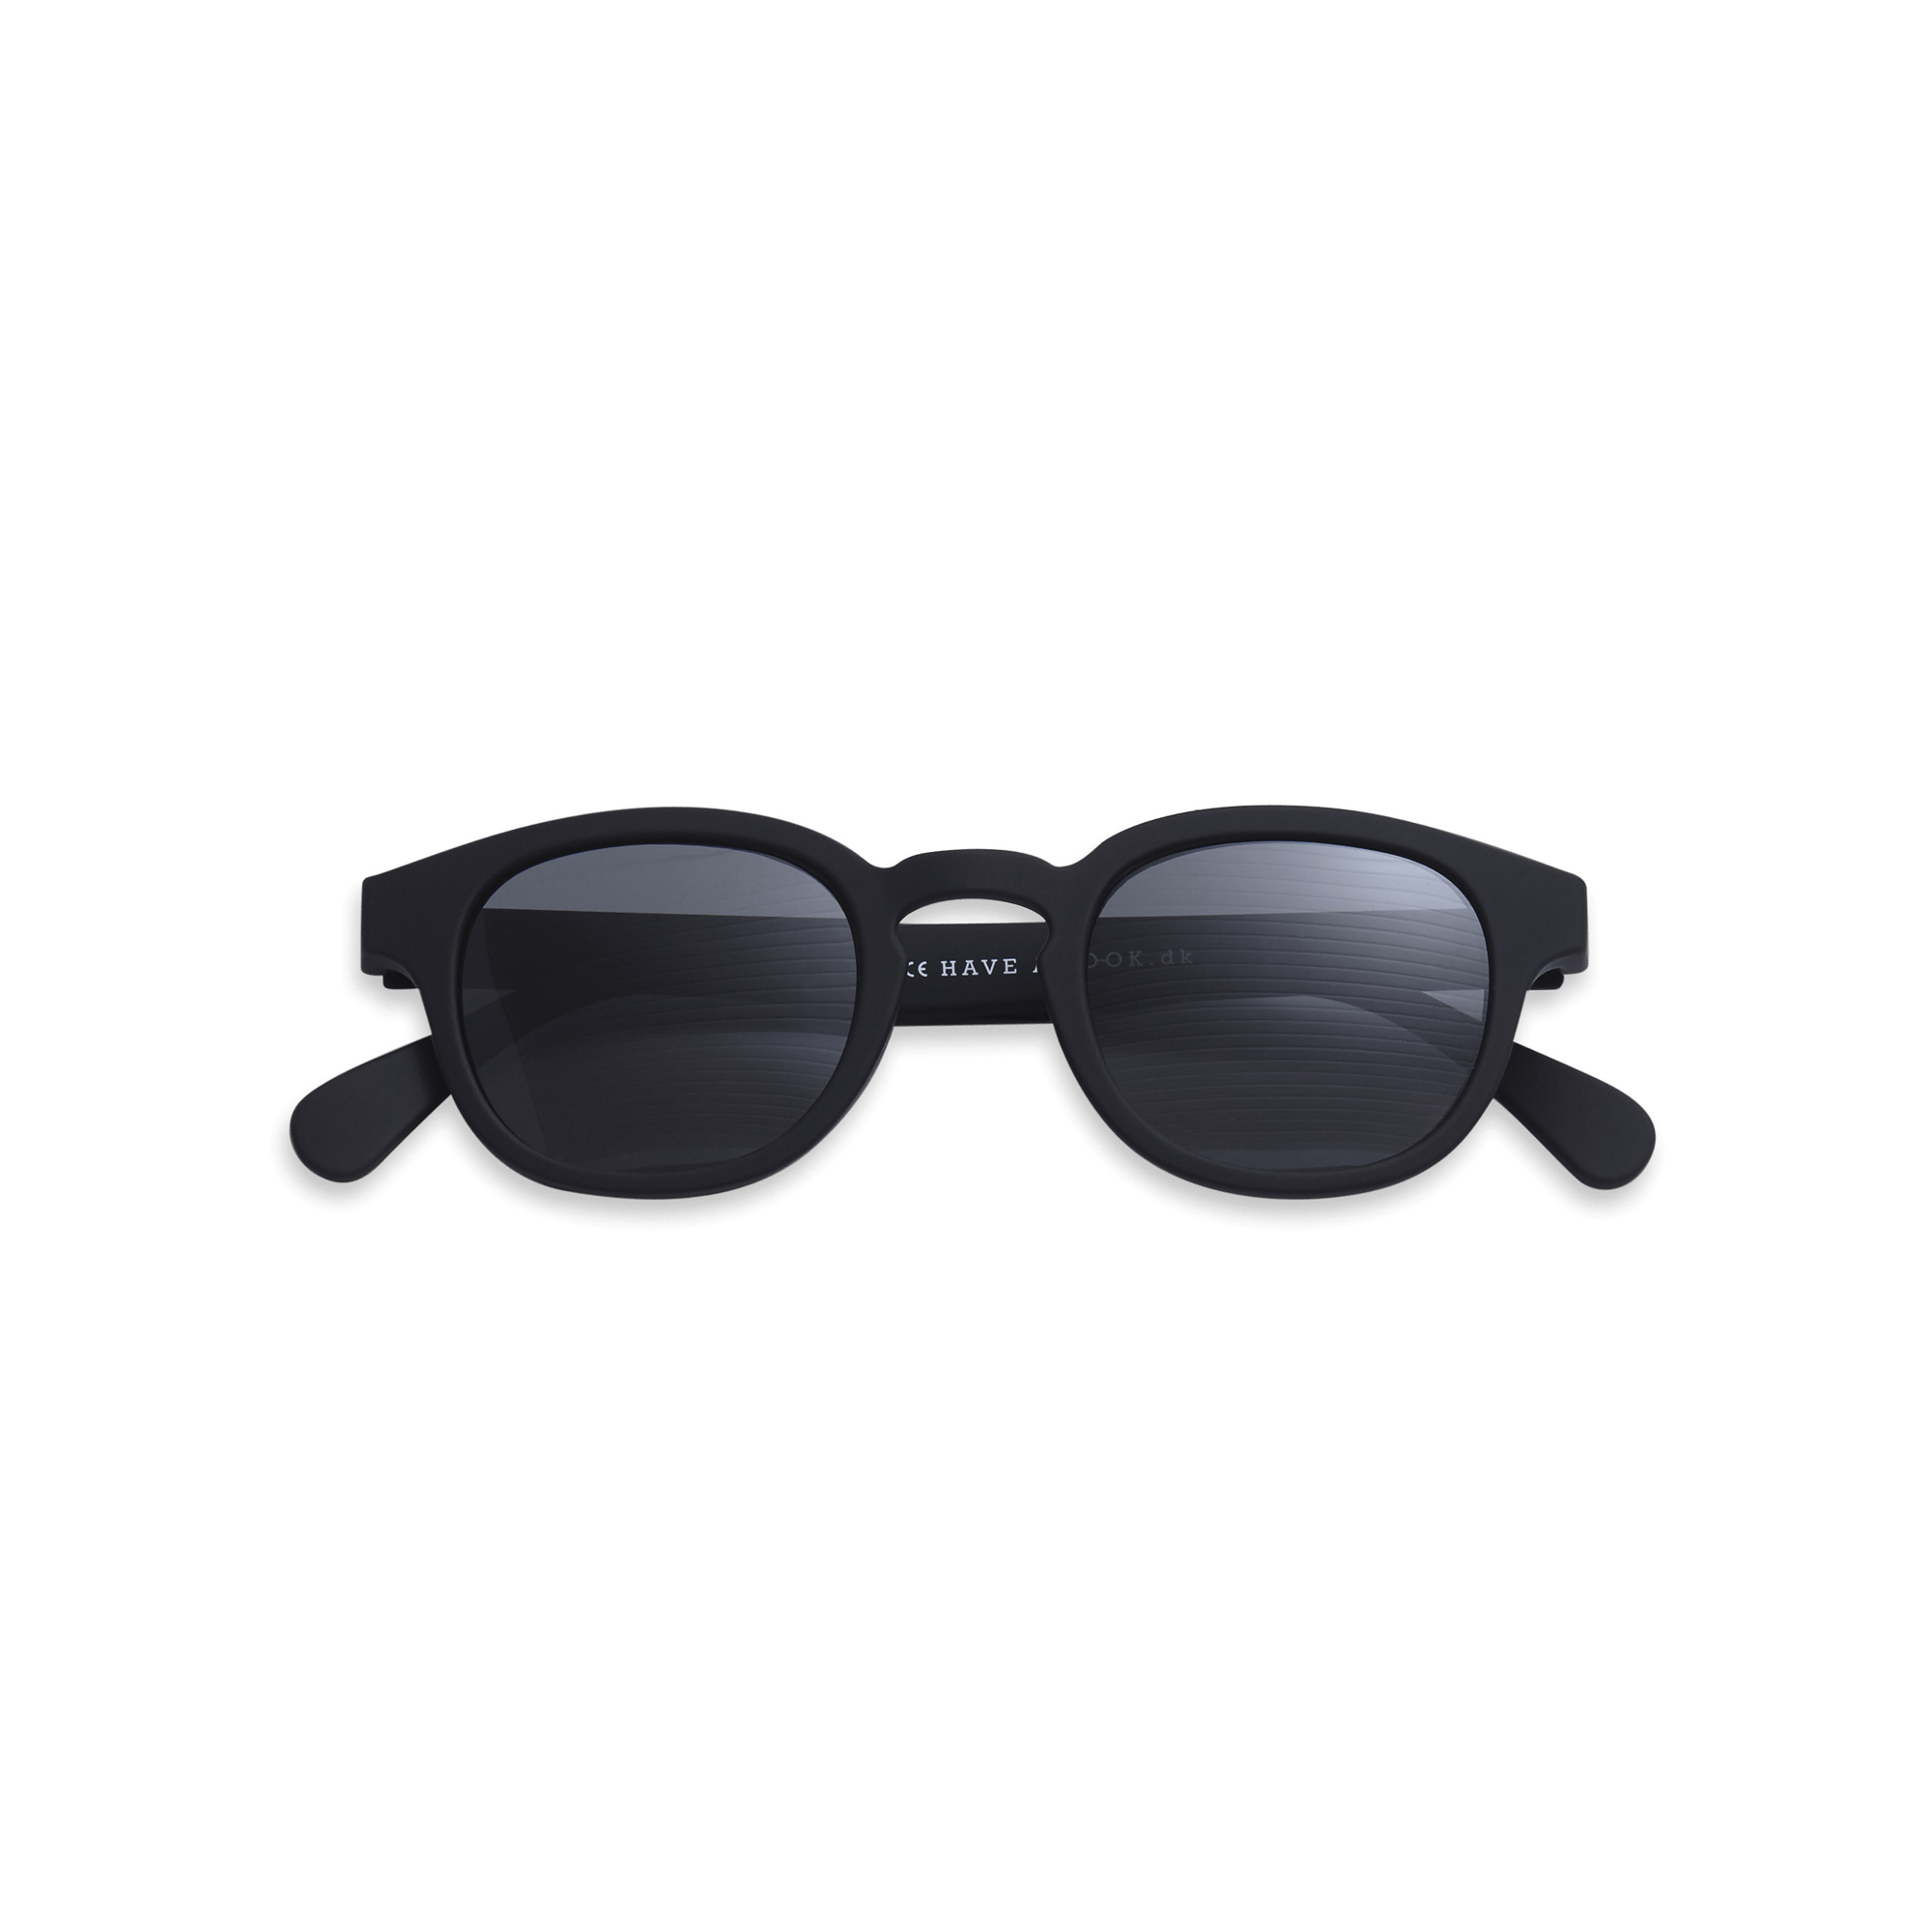 Sonnenfernbrillen Type C - black aus Have A Look